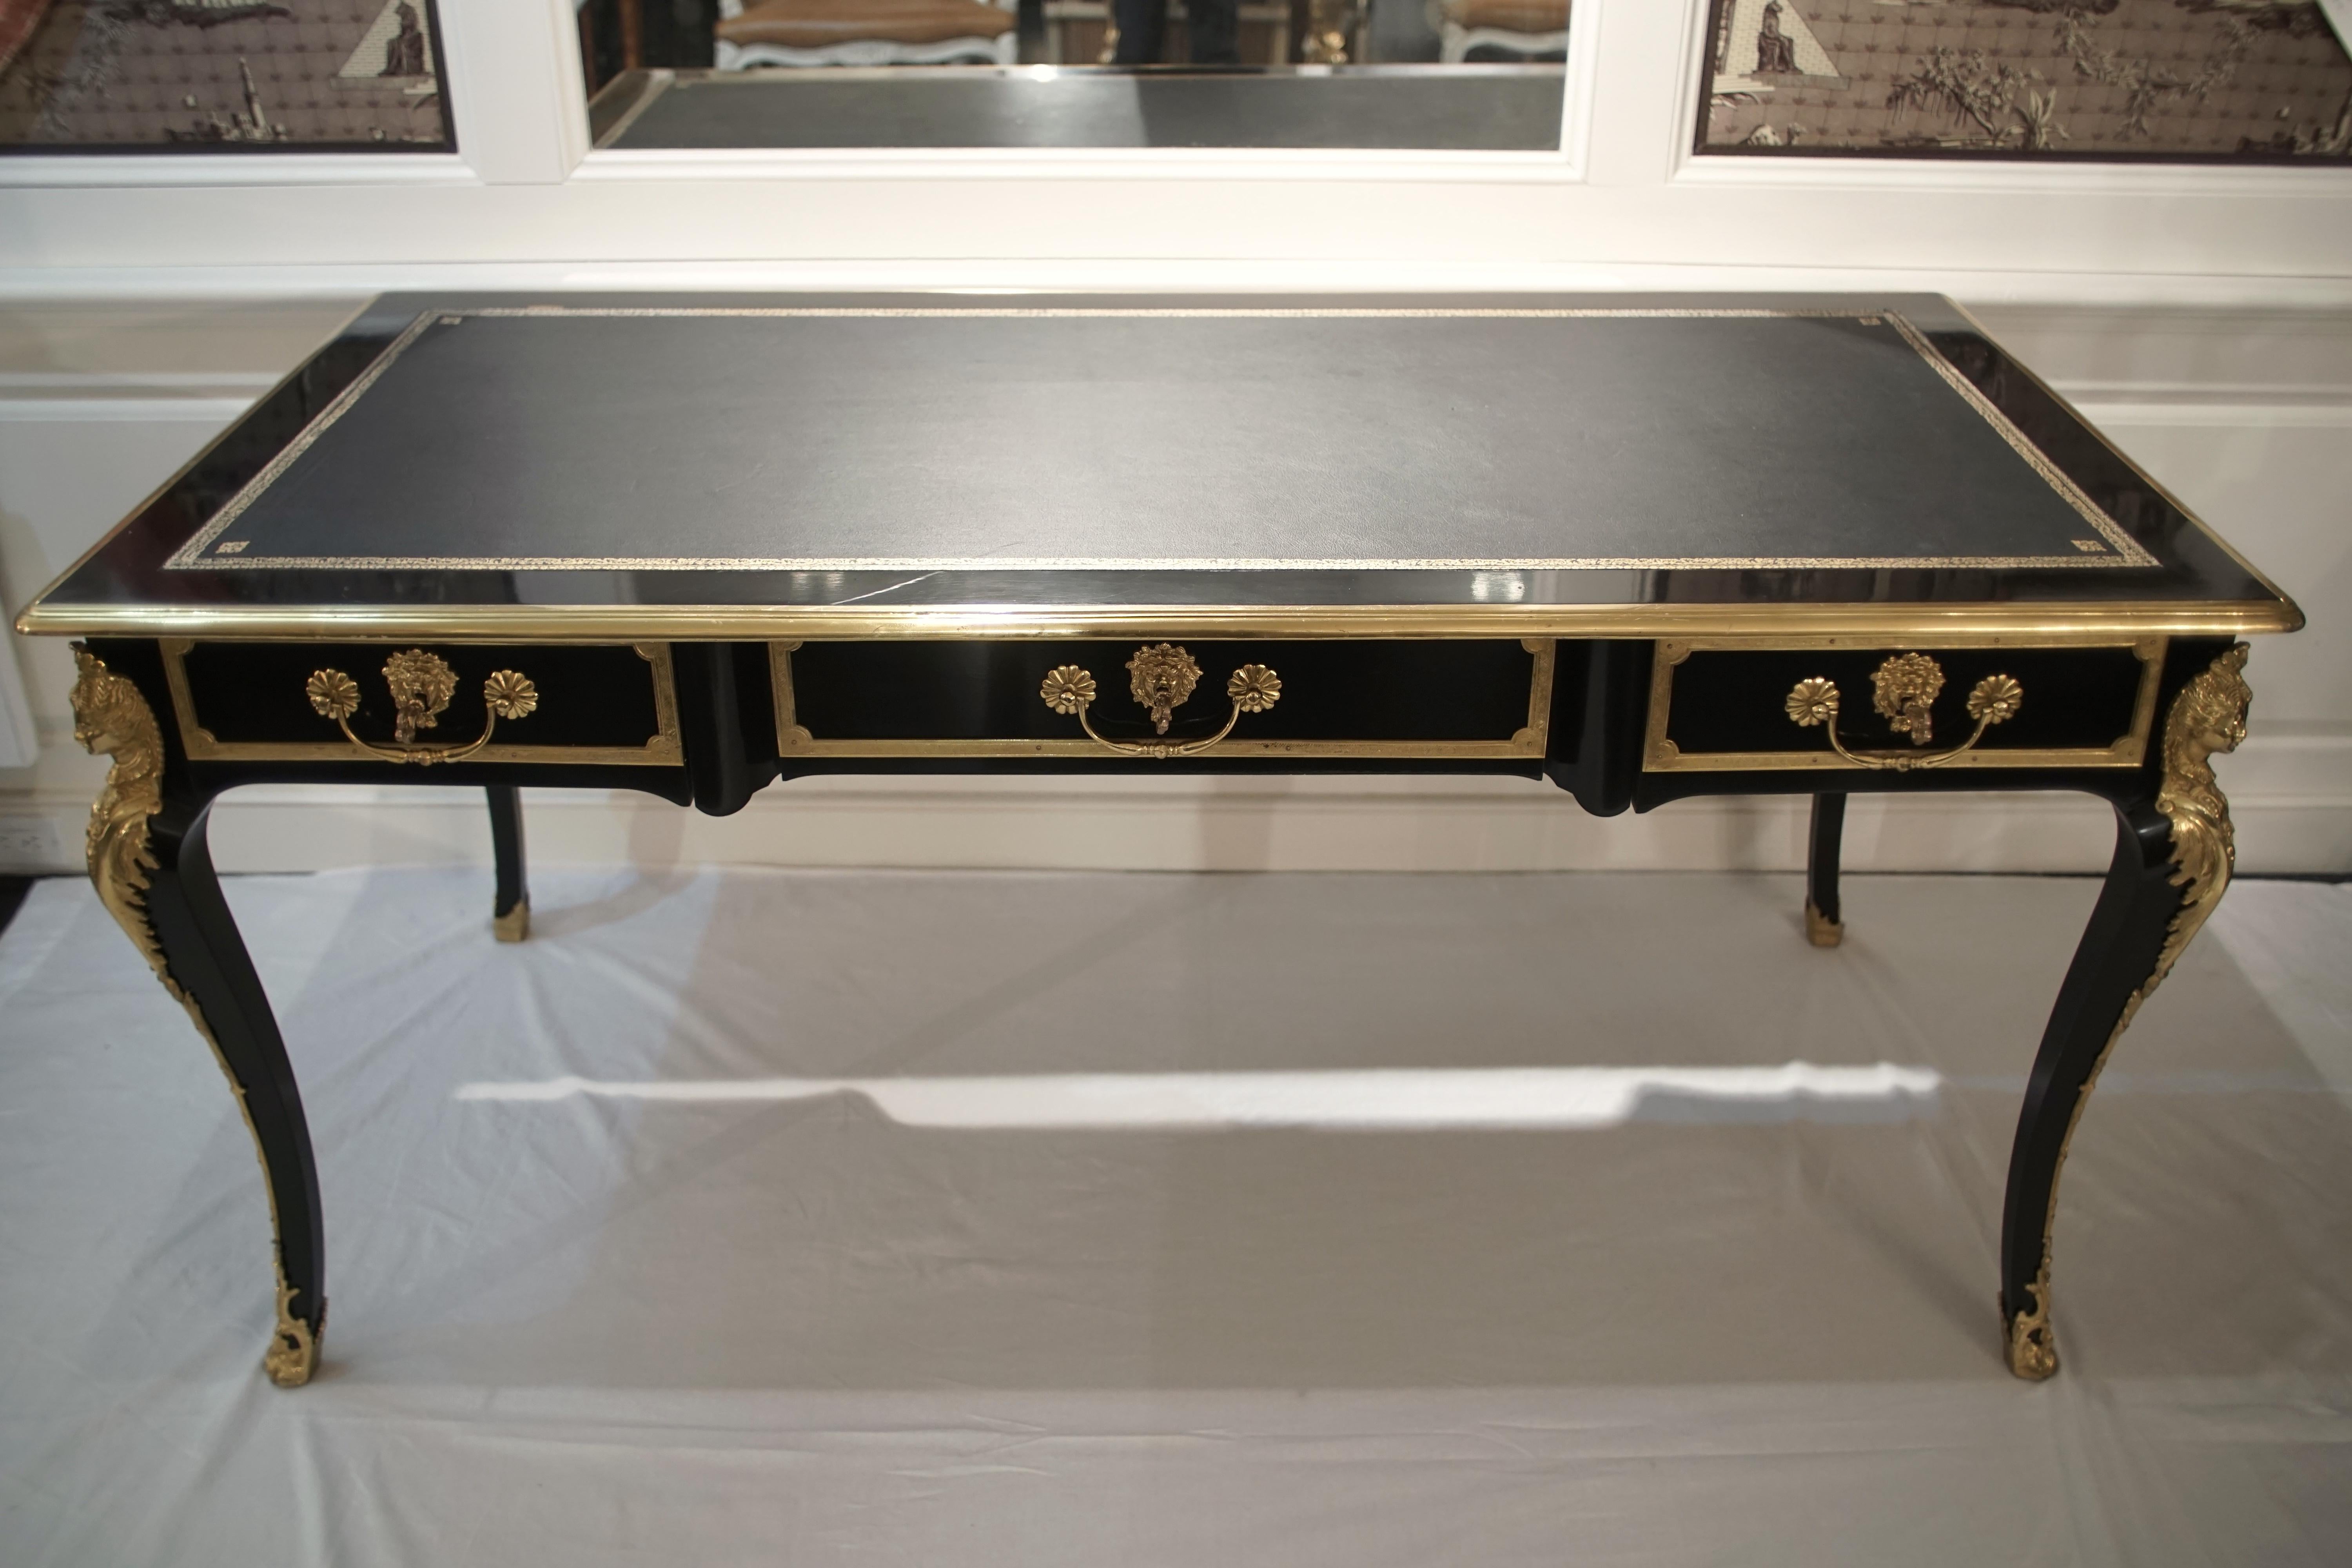 Louis XV style bureau plat desk, black with gilded bronze details. Tooled leather top. Ebonized.

Dimensions: 63” W x 29.5” H x 31.5” D
Leg space: 23.5